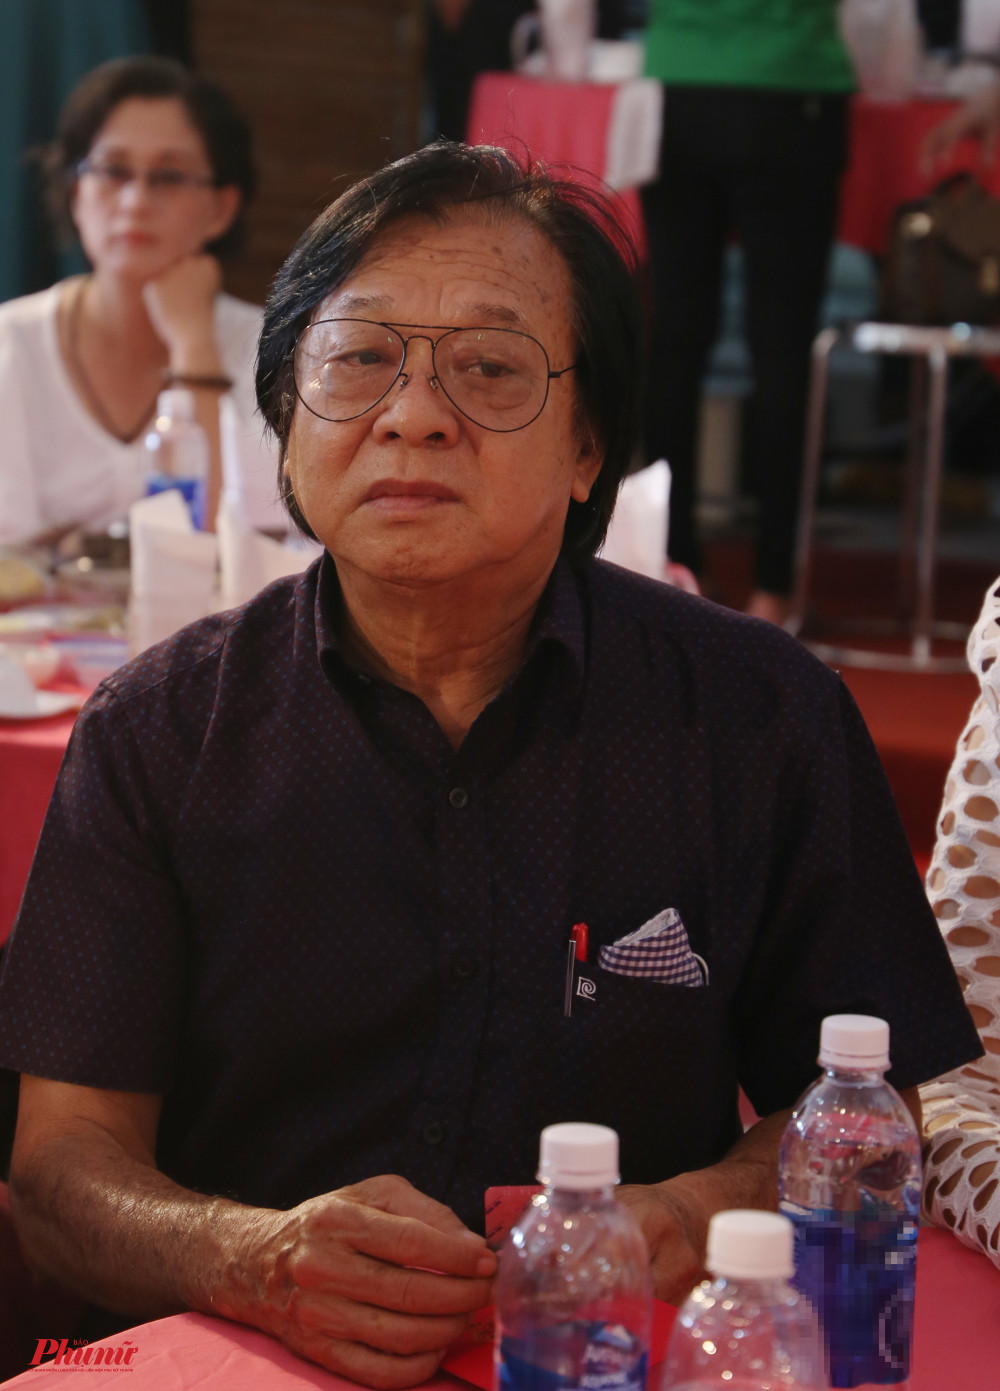 NSND Trần Ngọc Giàu, chủ tịch Hội Sân khấu TPHCM chung vui cùng đồng nghiệp trong ngày giỗ tổ tại Nhà hát Trần Hữu Trang. Ông từng giữ chức giám đốc nhà hát.